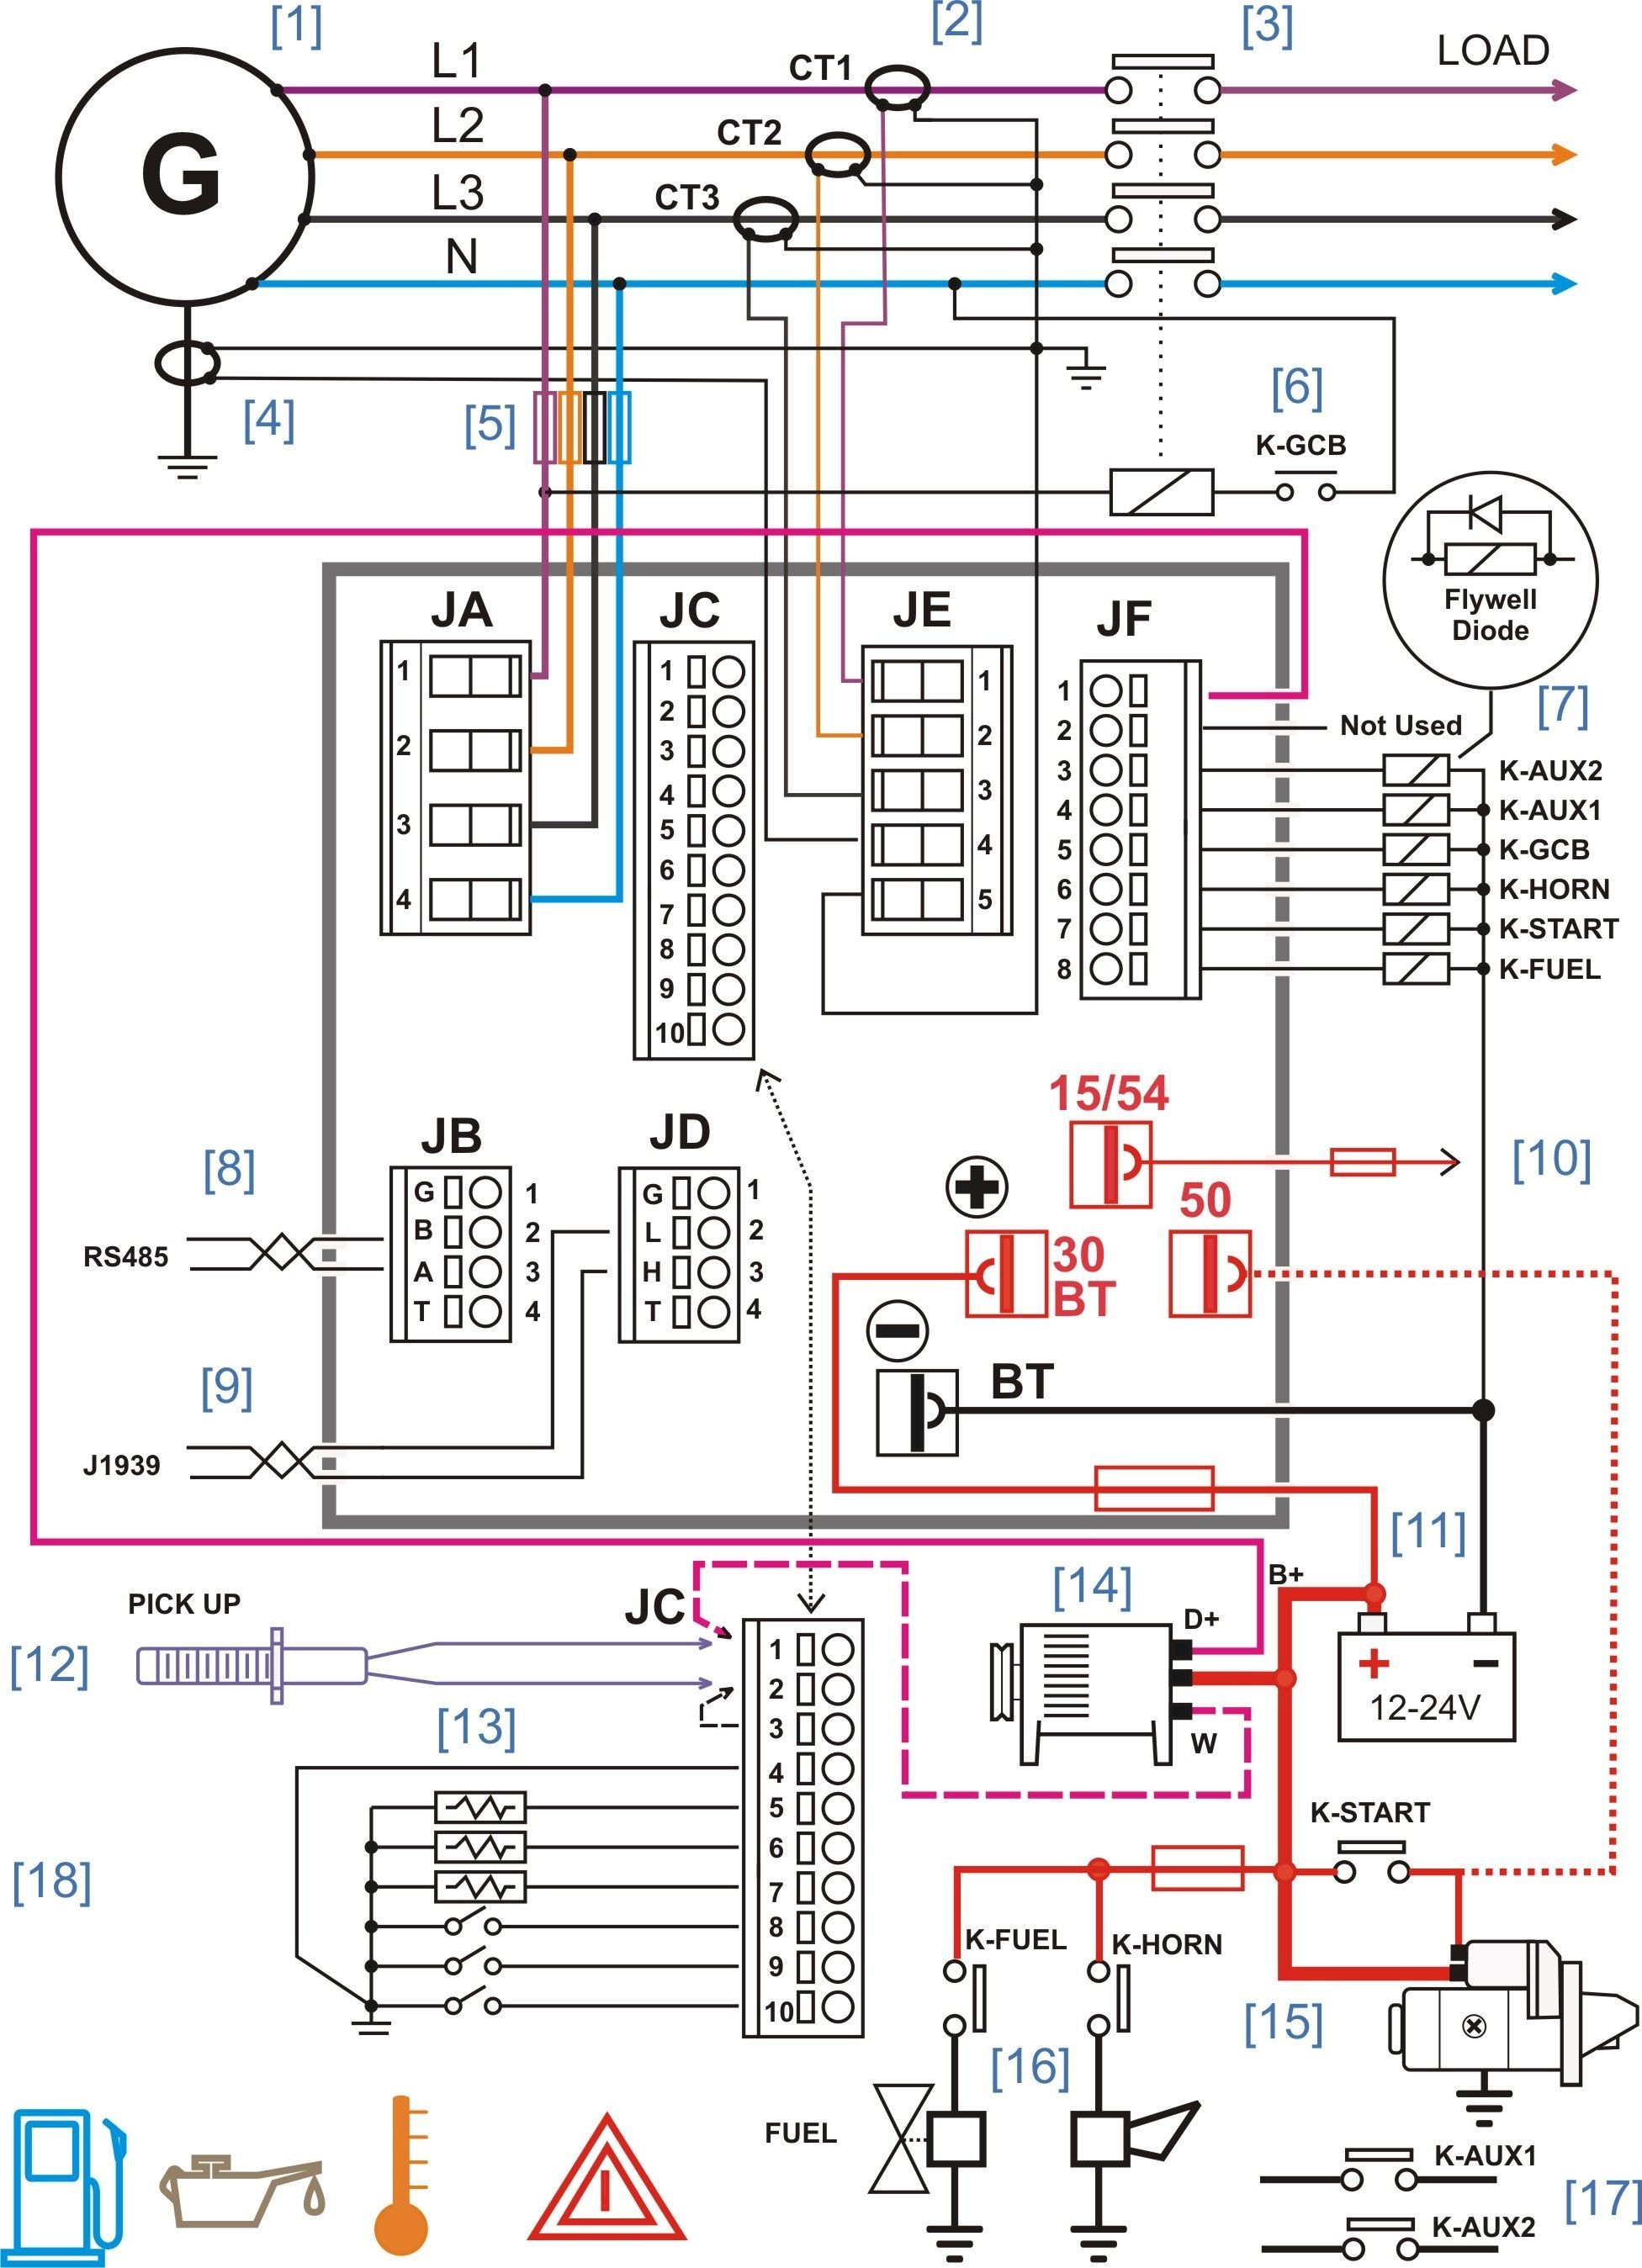 Circuit Diagram Maker Circuit Diagram Maker Online 30 Useful Circuit Diagram Drawing